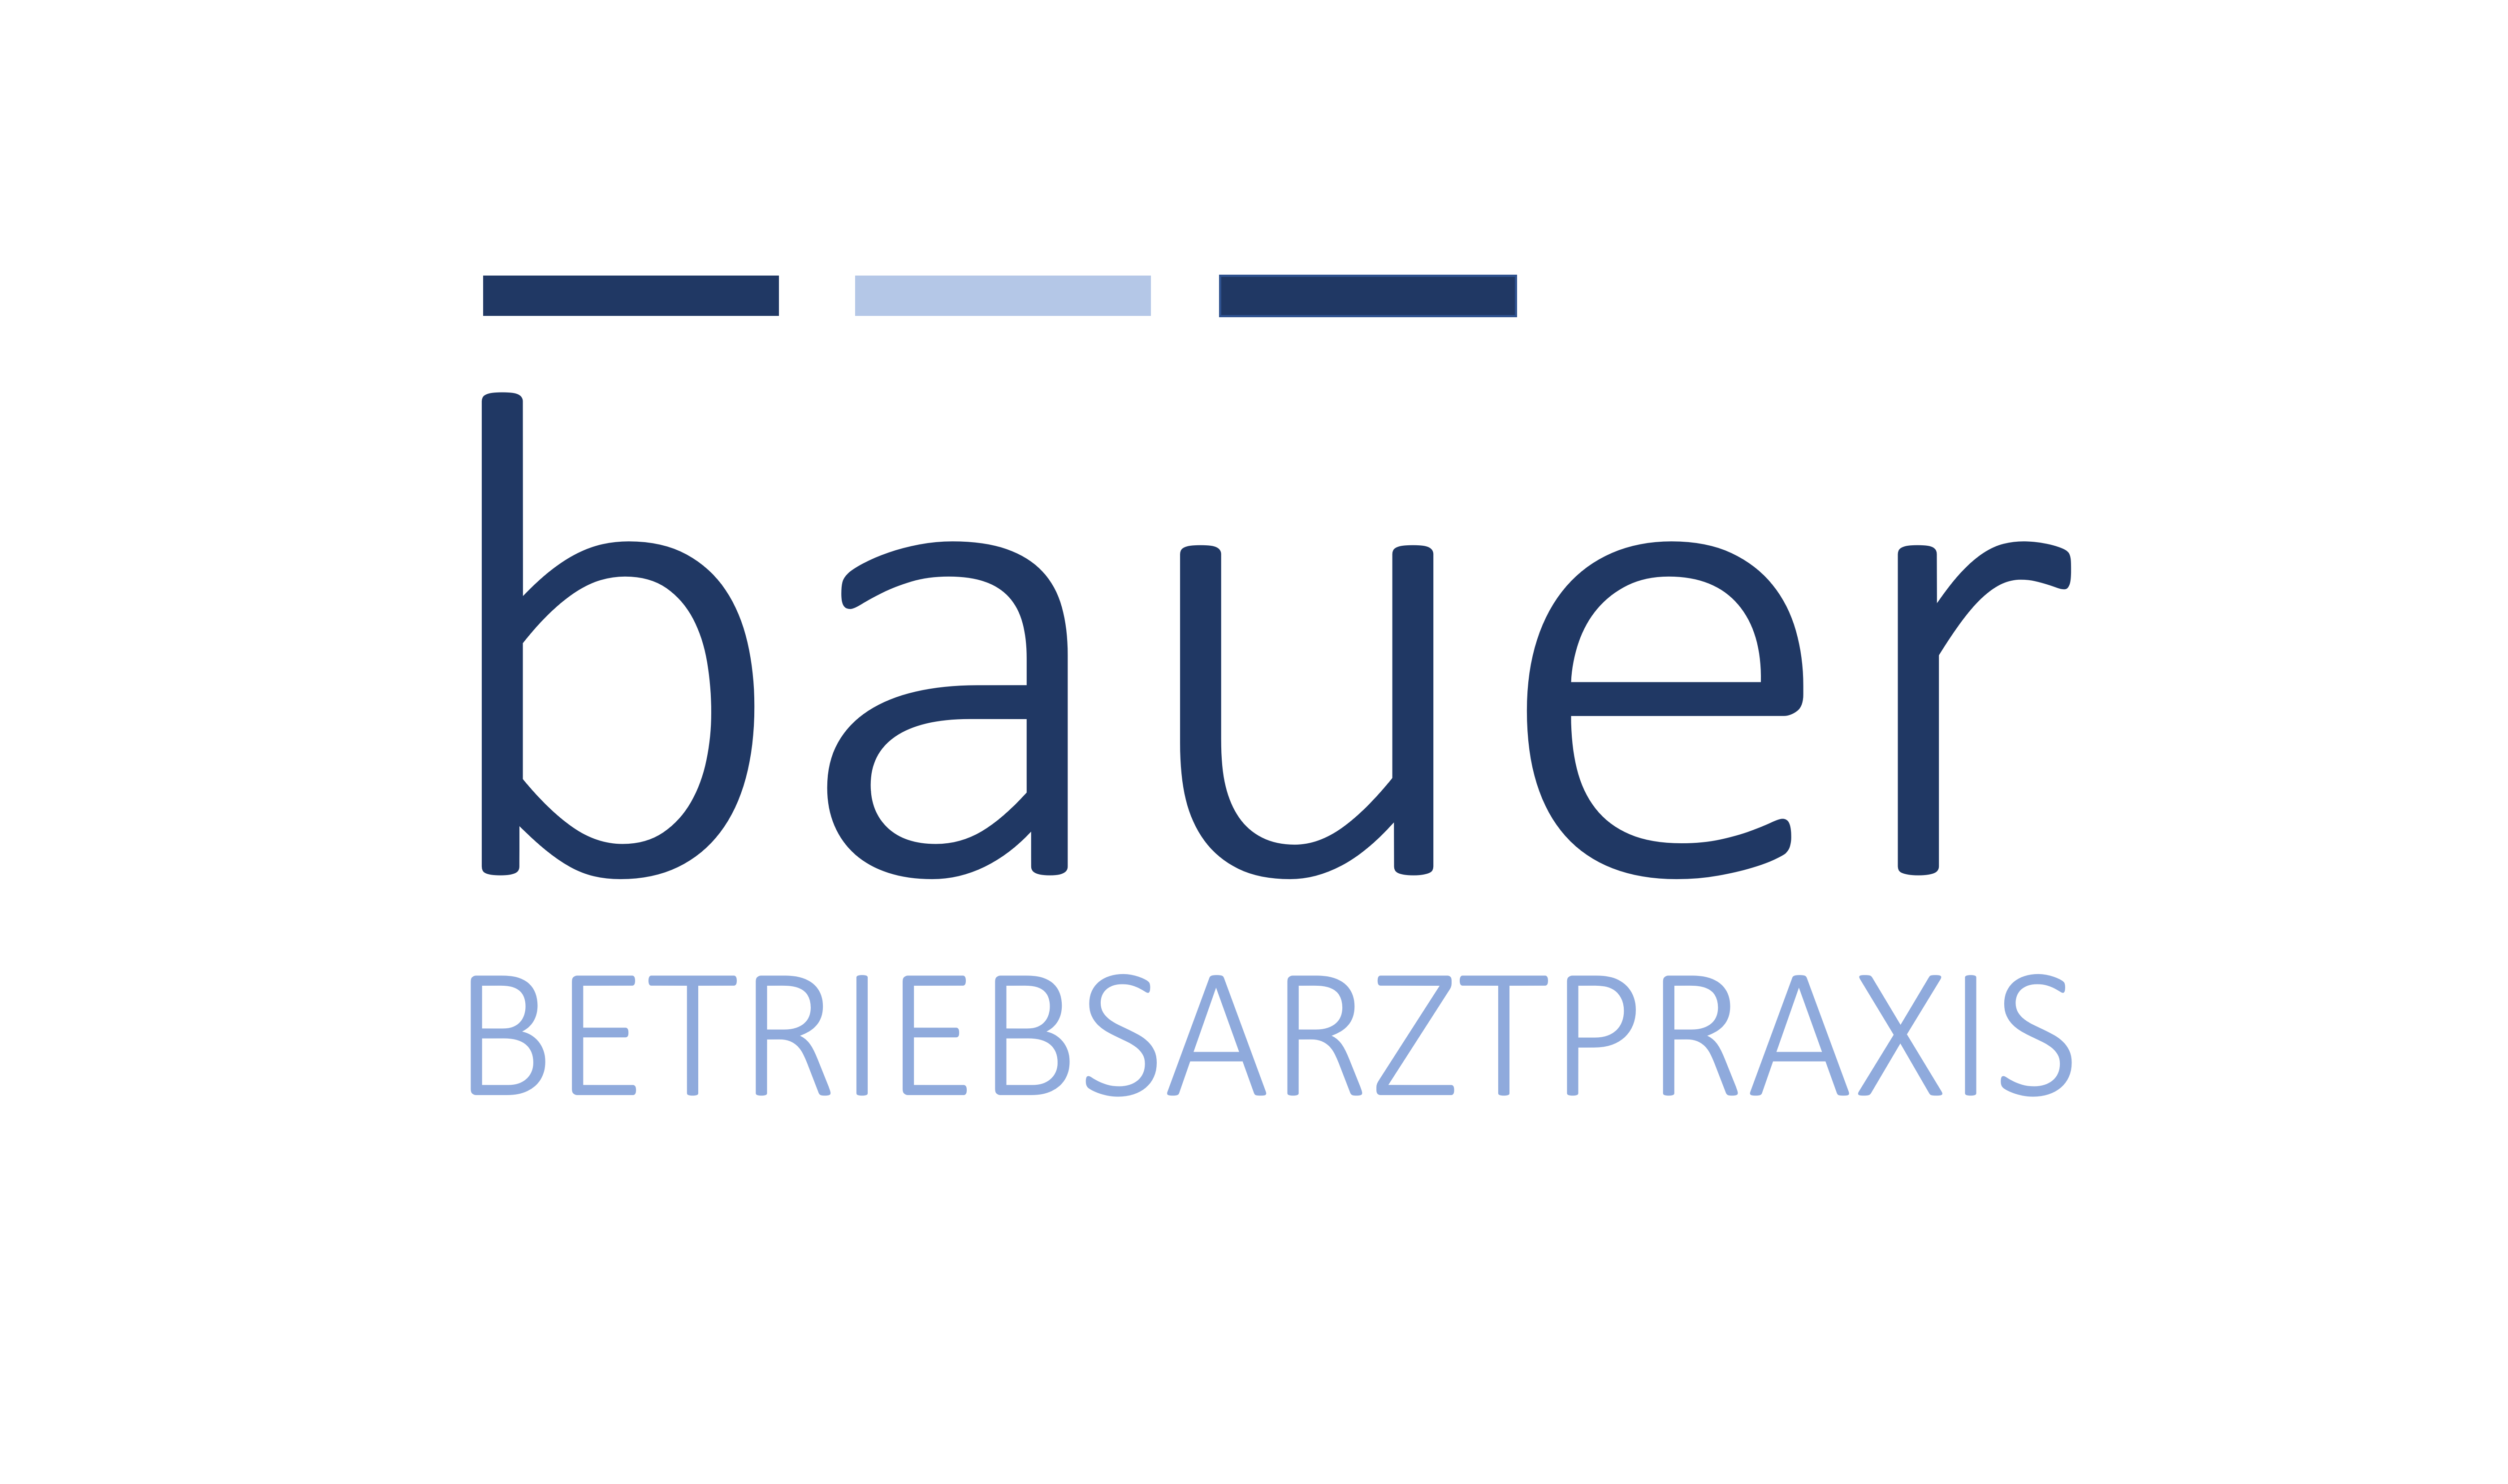 Betriebsarztpraxis Bauer